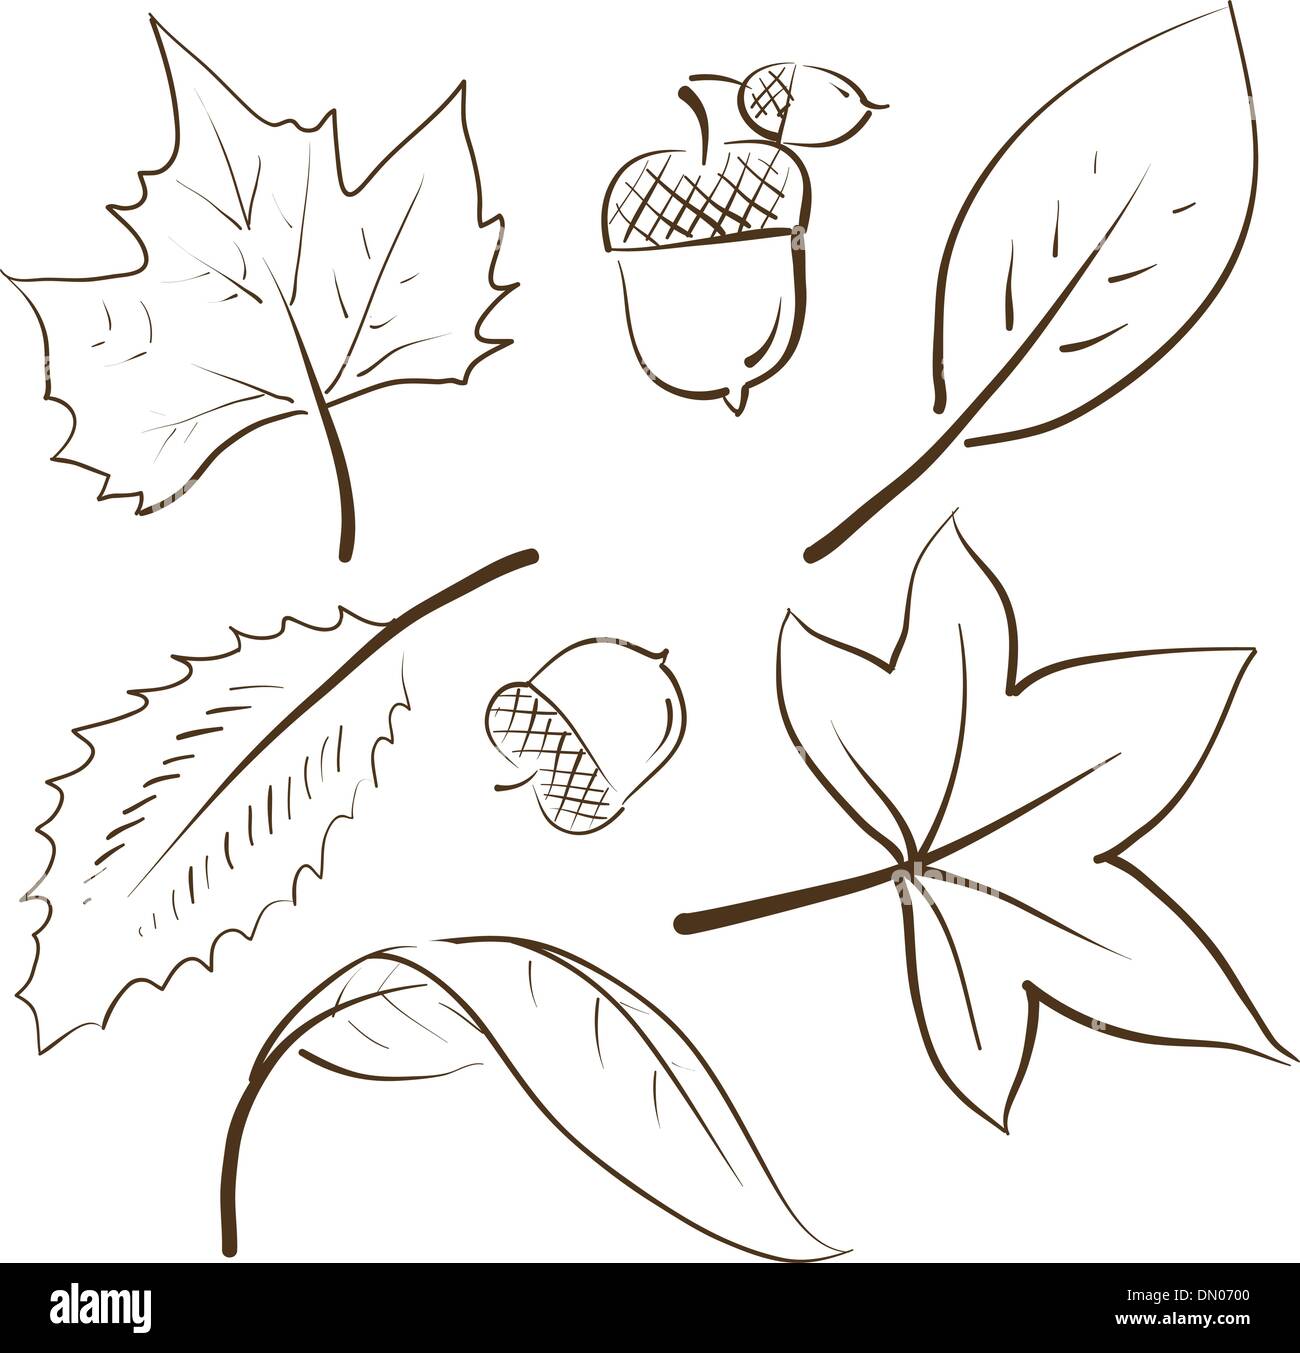 Pencil sketch of leaves  Drawings Art drawings sketches Leaf drawing